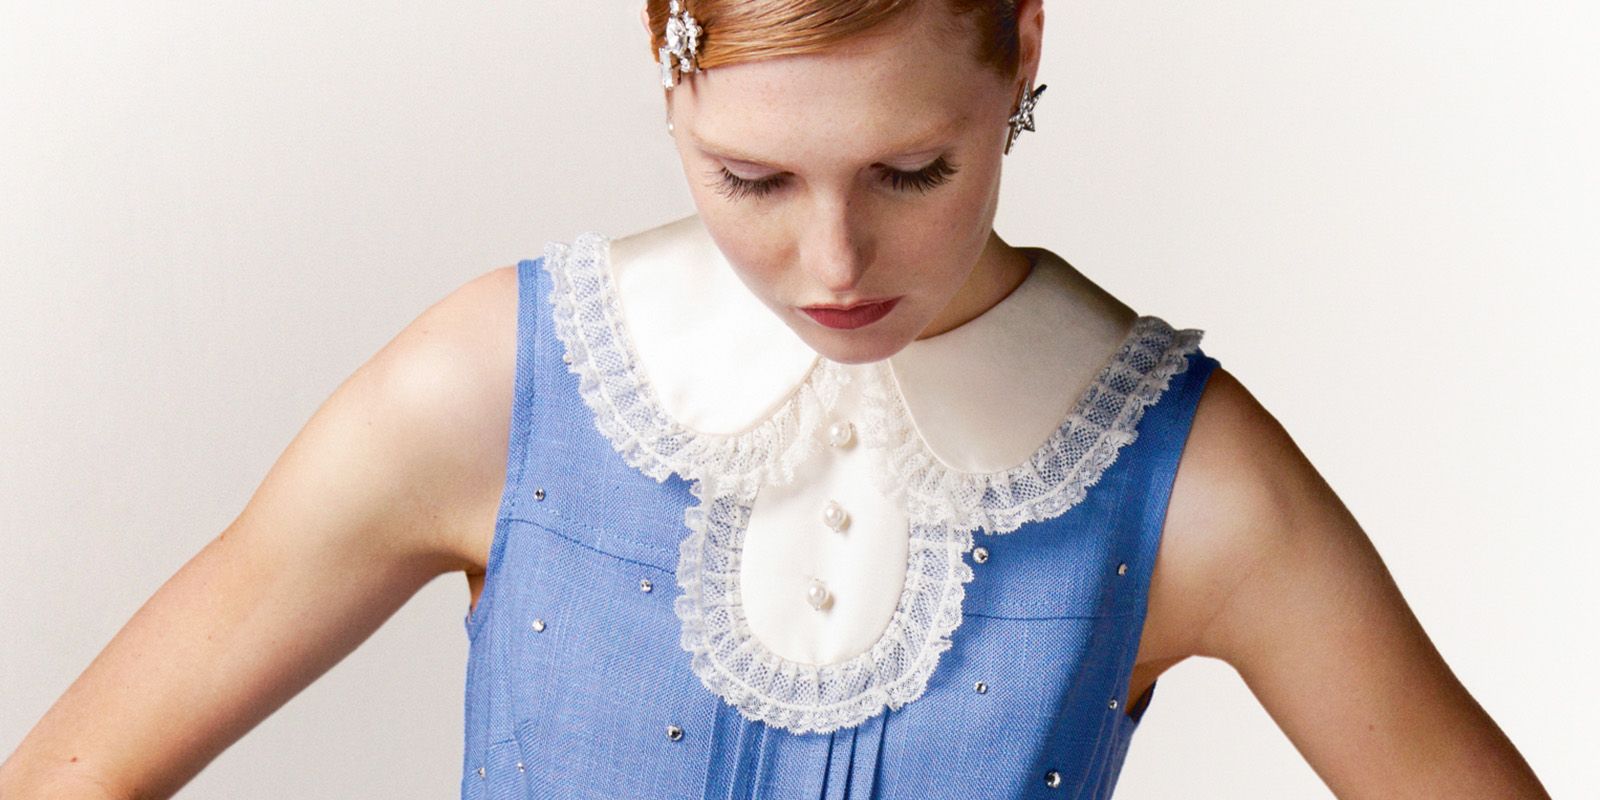 ミュウミュウ の新アップサイクルプロジェクトが始動 世界にひとつのヴィンテージドレスが発売